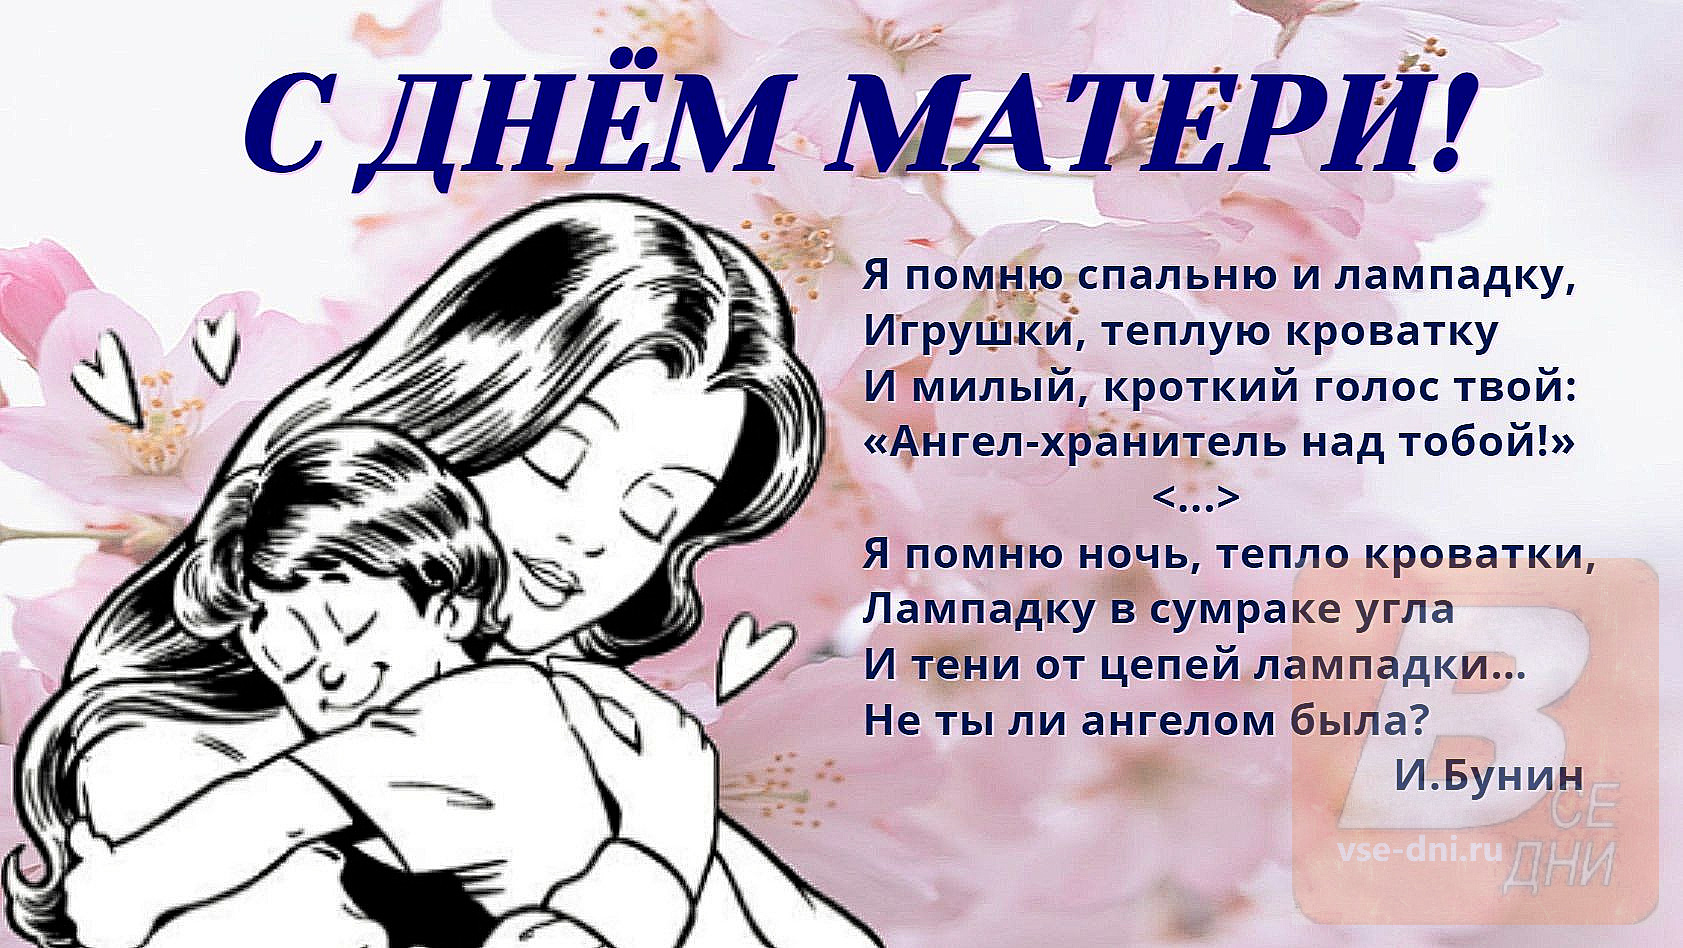 Международный день матери россия